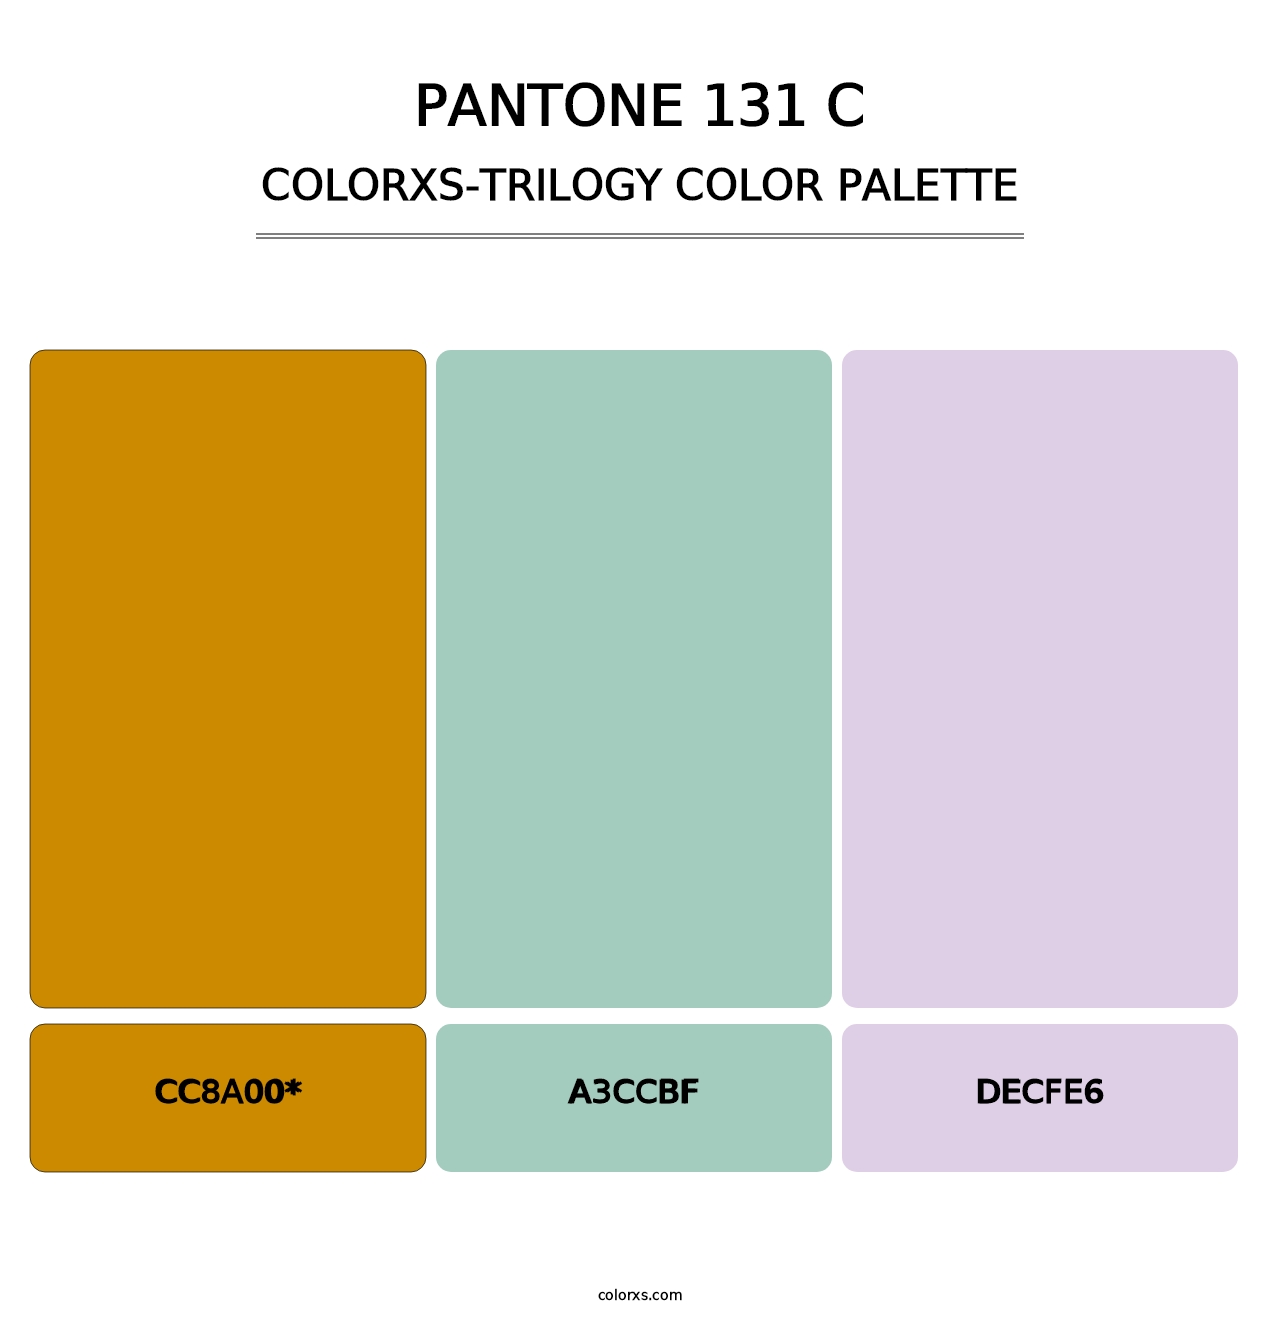 PANTONE 131 C - Colorxs Trilogy Palette